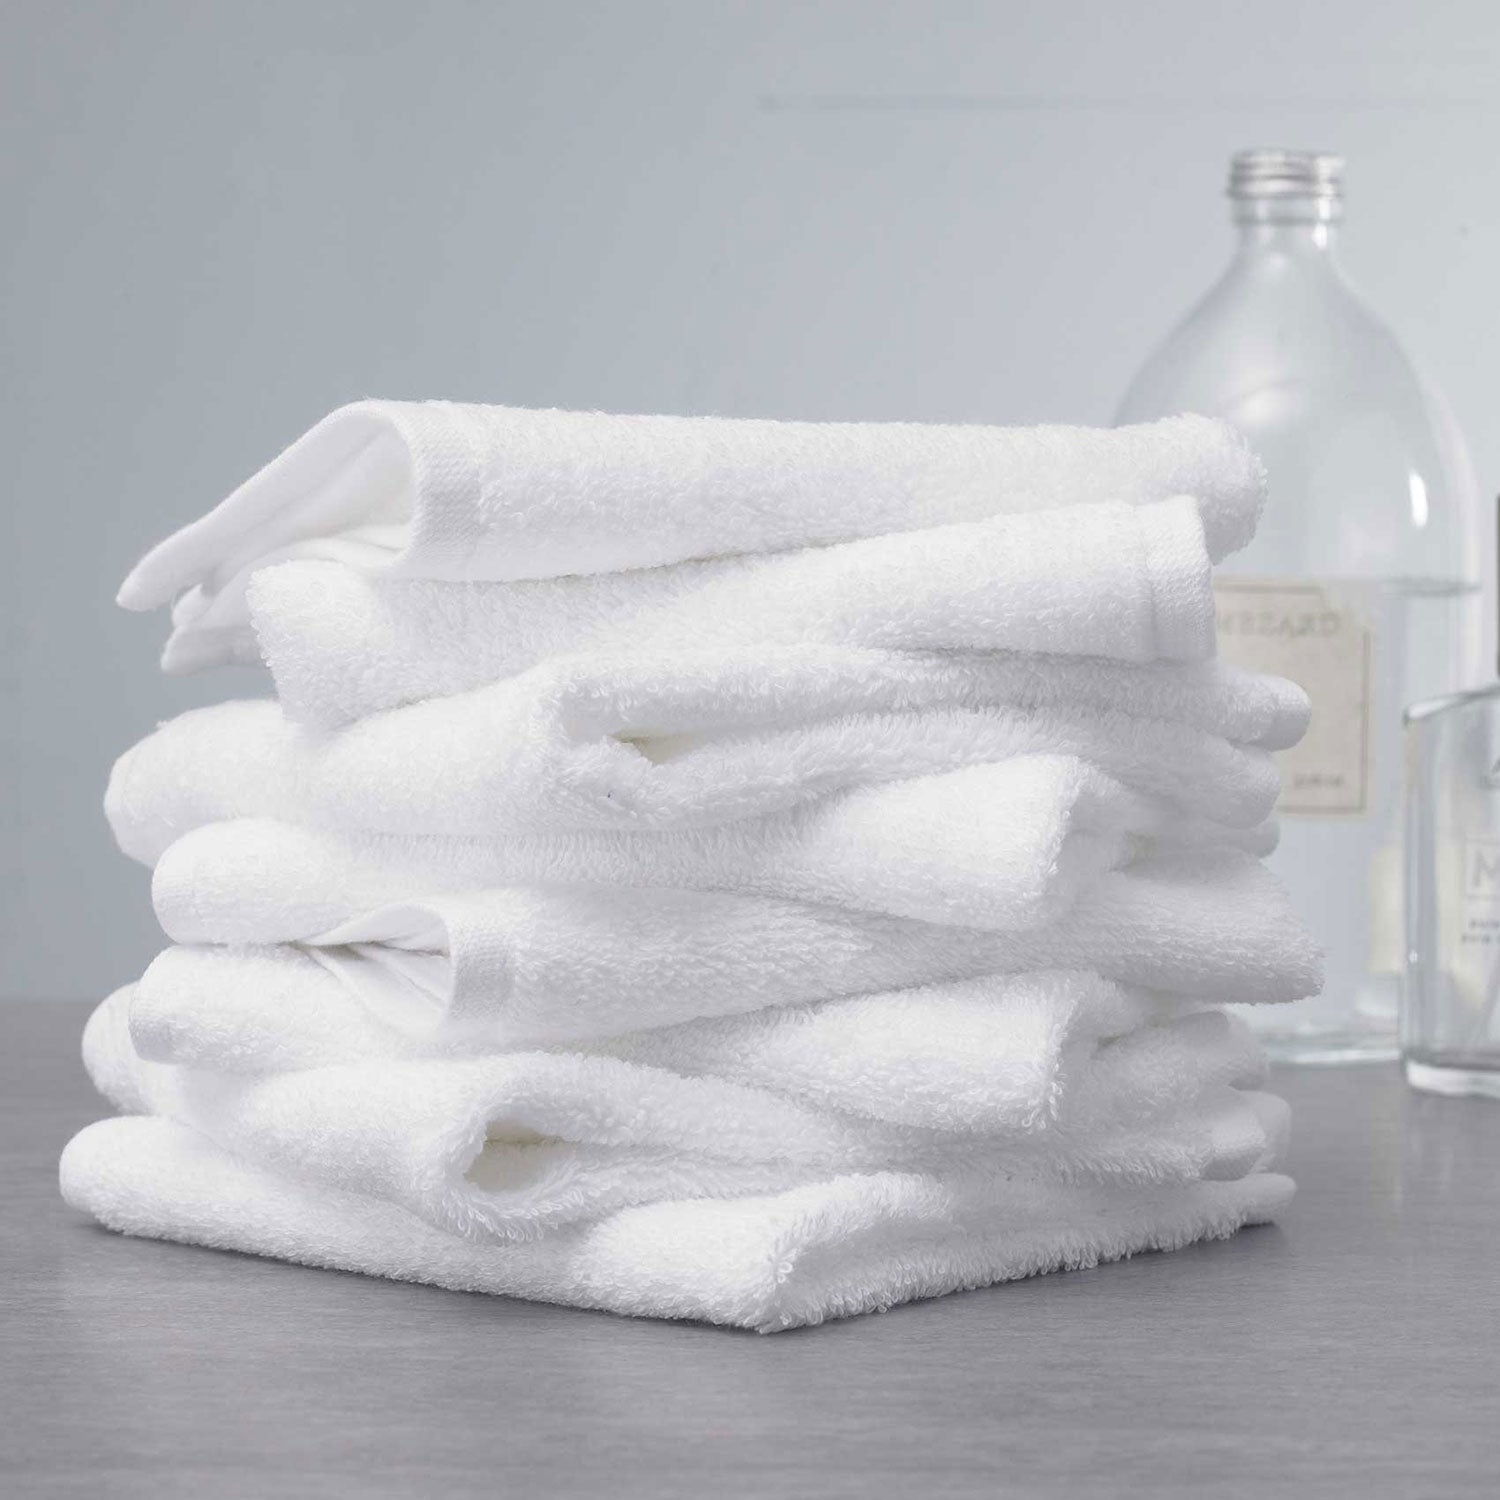 Antibacterial Face Towel